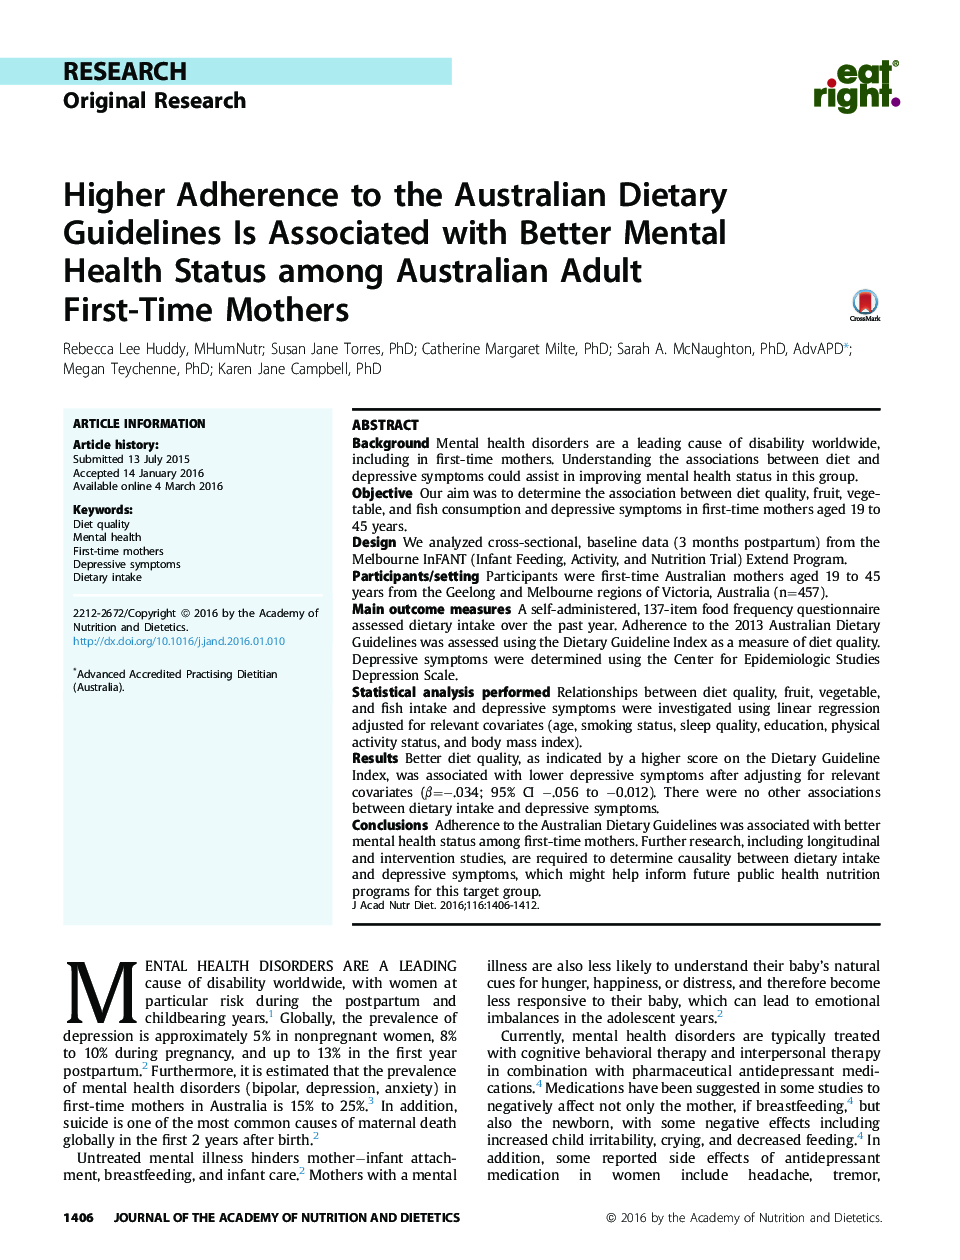 پایبندی بیشتر به دستورالعمل های رژیم غذایی استرالیا با وضعیت سلامت روانی بهتر در مادران باروری بزرگسالان استرالیا 